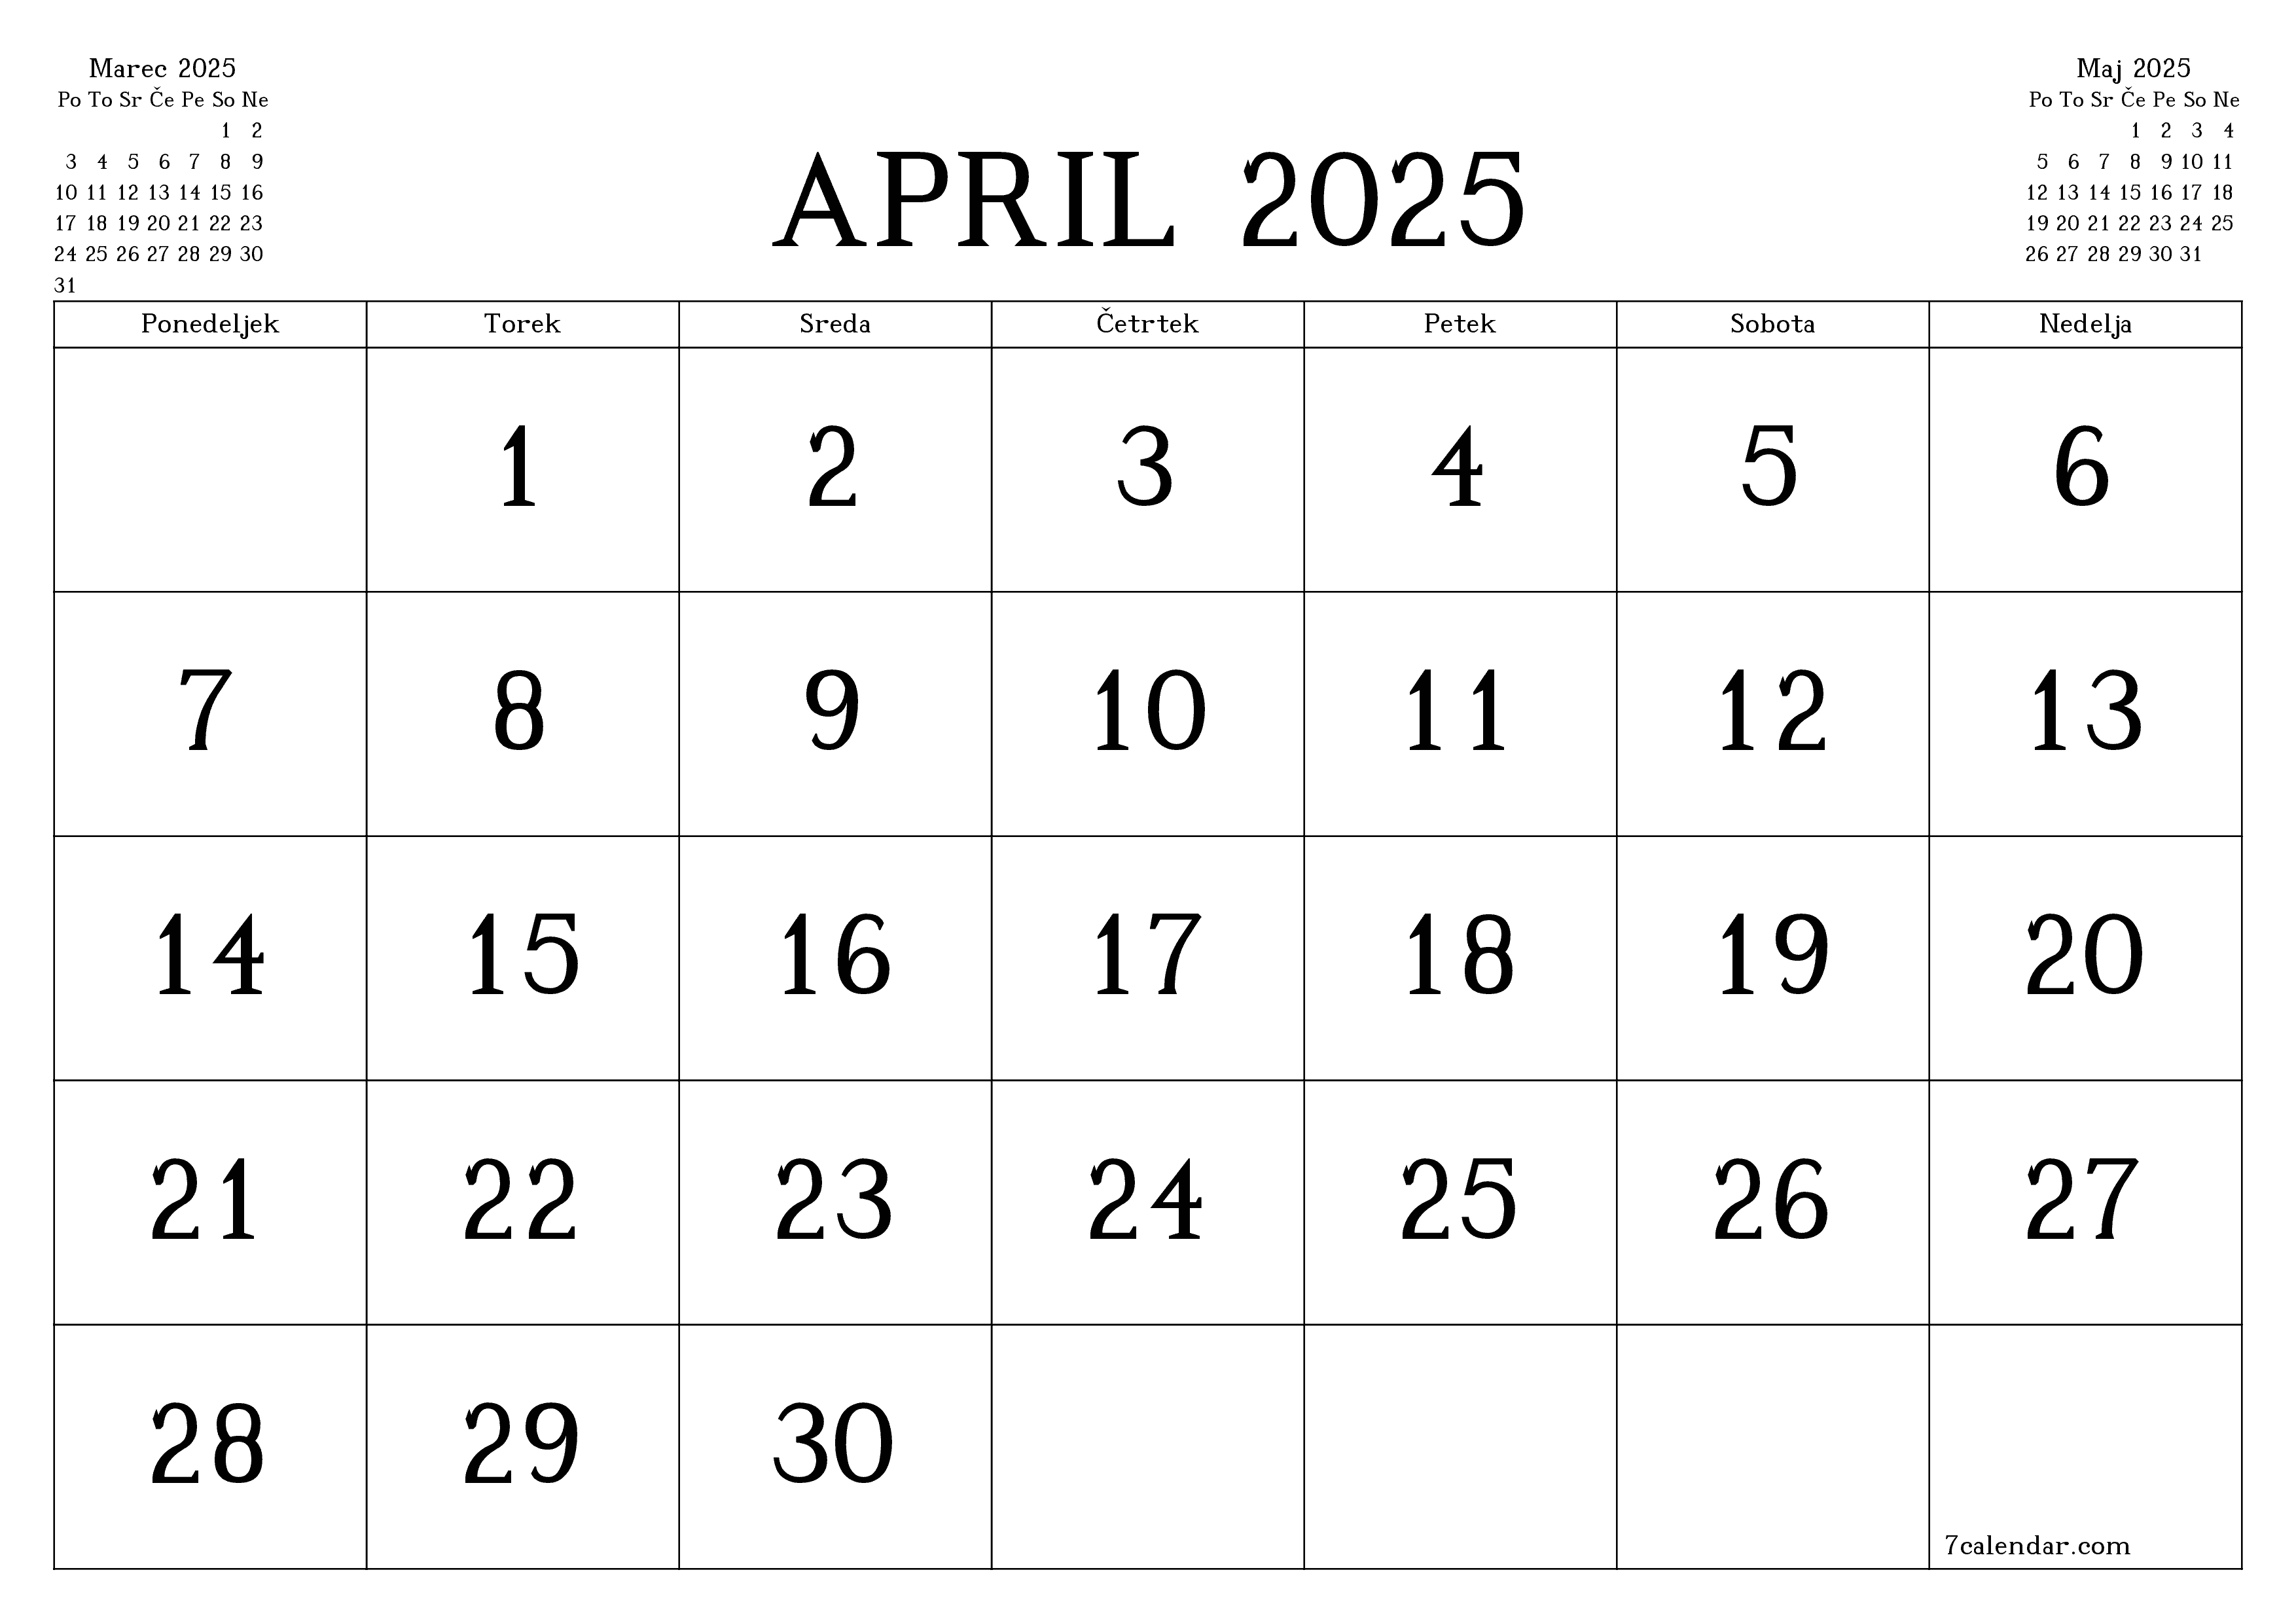 Prazen mesečni načrtovalec koledarja za mesec April 2025 z opombami, natisnjenimi v PDF PNG Slovenian